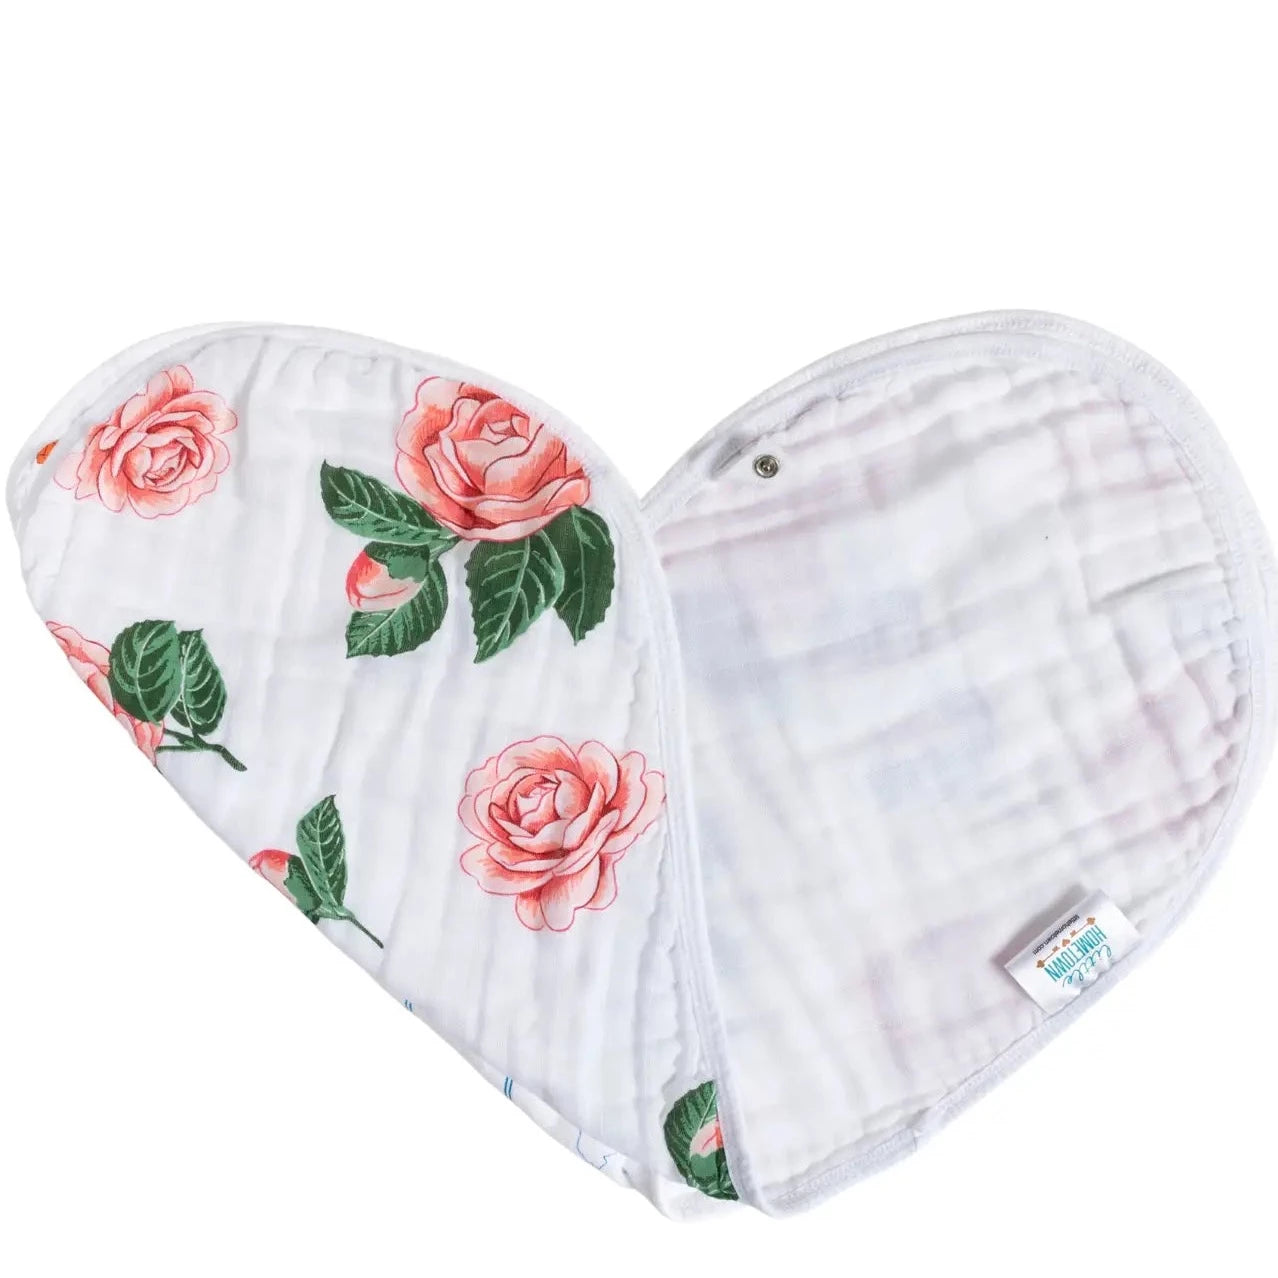 Camellia Themed Bip/Burp Cloth